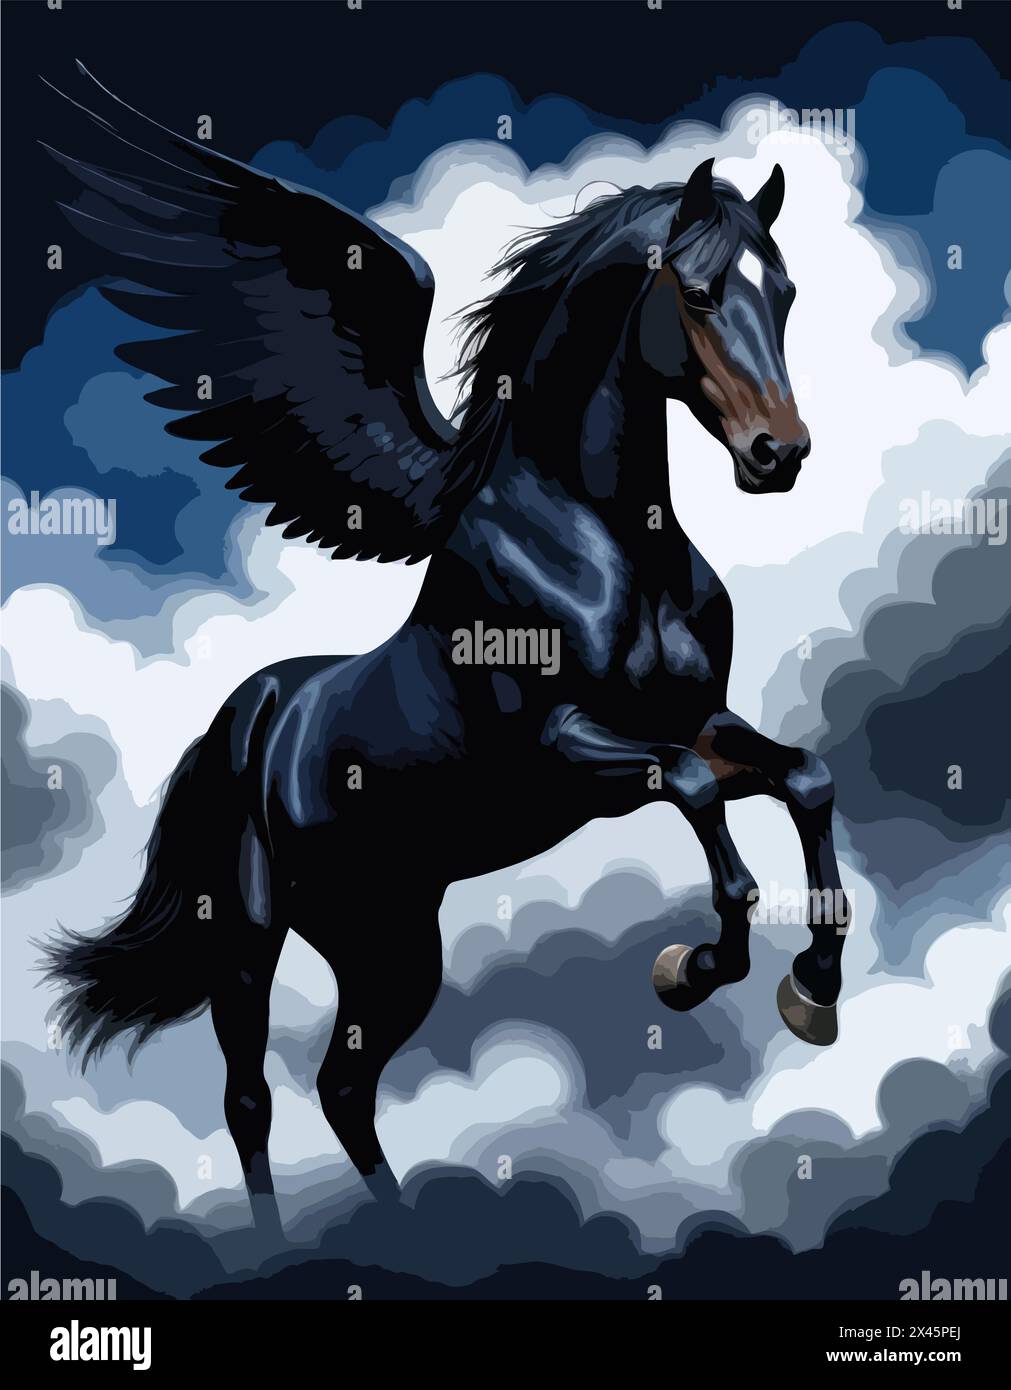 Hochdetaillierter Farbvektor - Bild des herrlichen griechischen mythologischen, göttlichen geflügelten Pferdes Pegasus, der in den Wolken fliegt Stock Vektor